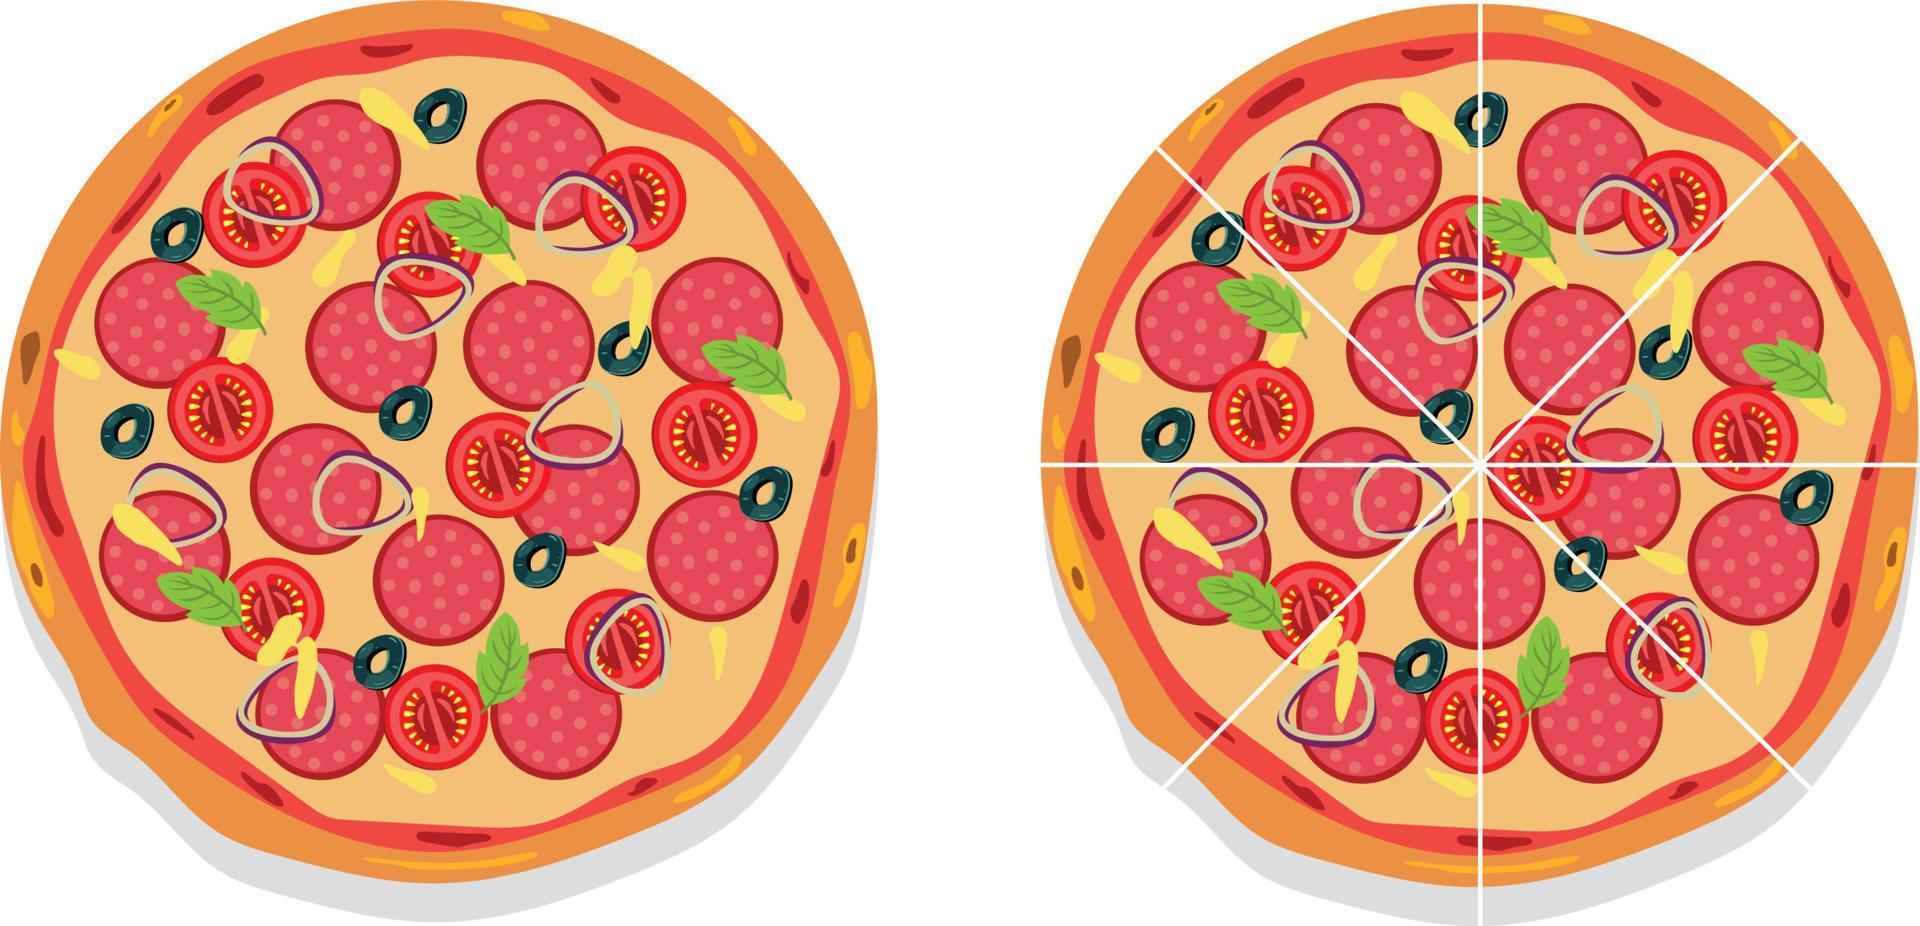 bunte runde leckere pizza aus der draufsicht vektor